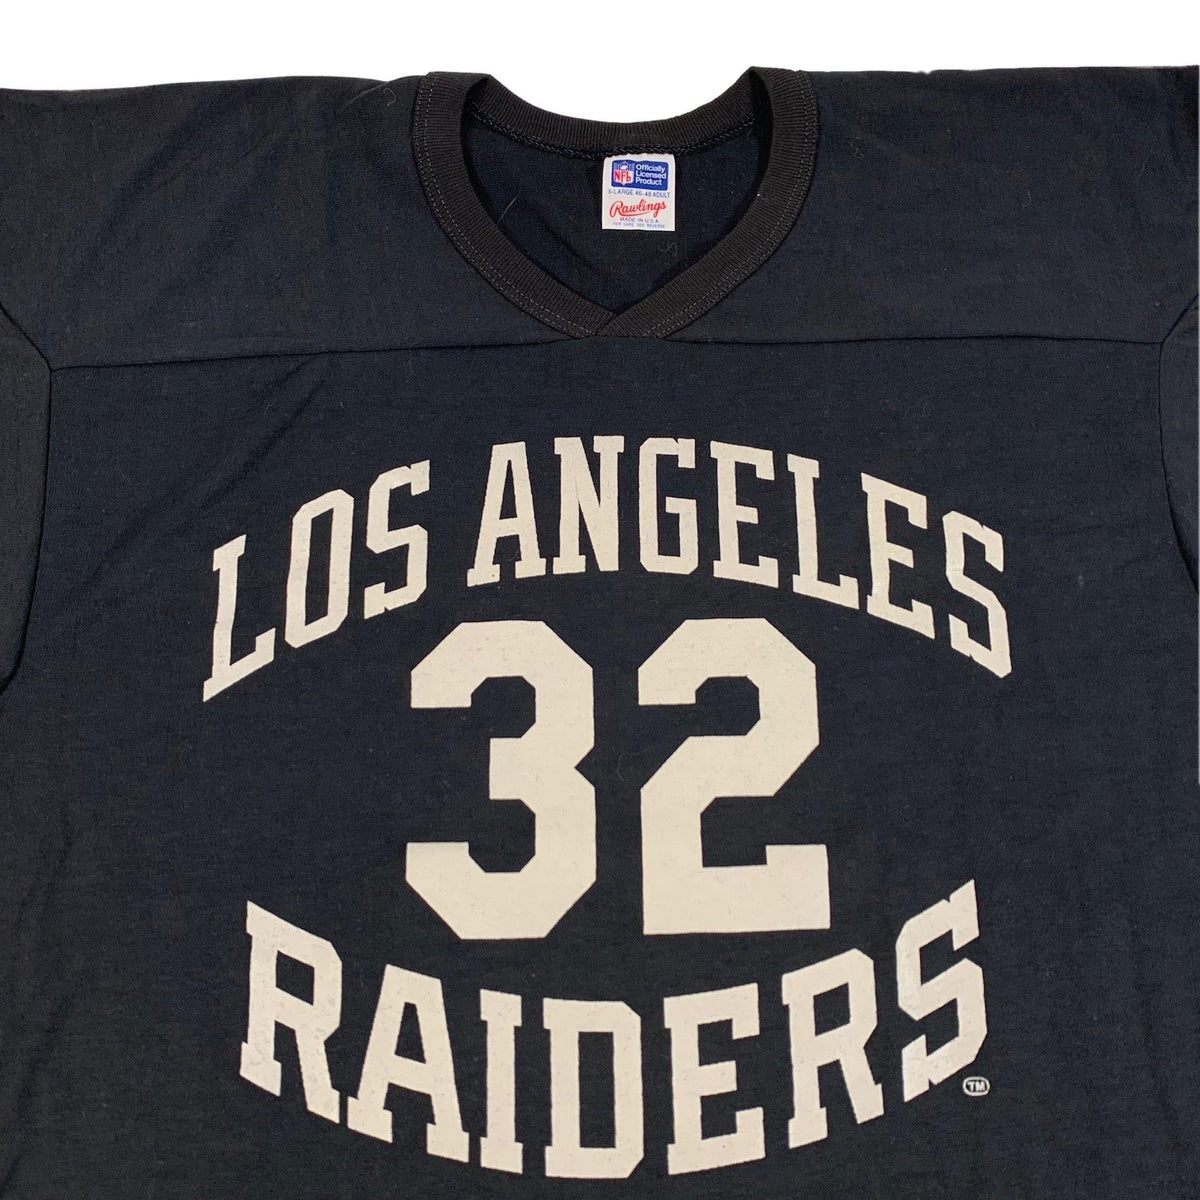 Vintage Los Angeles Raiders &quot;Marcus Allen” Jersey - jointcustodydc